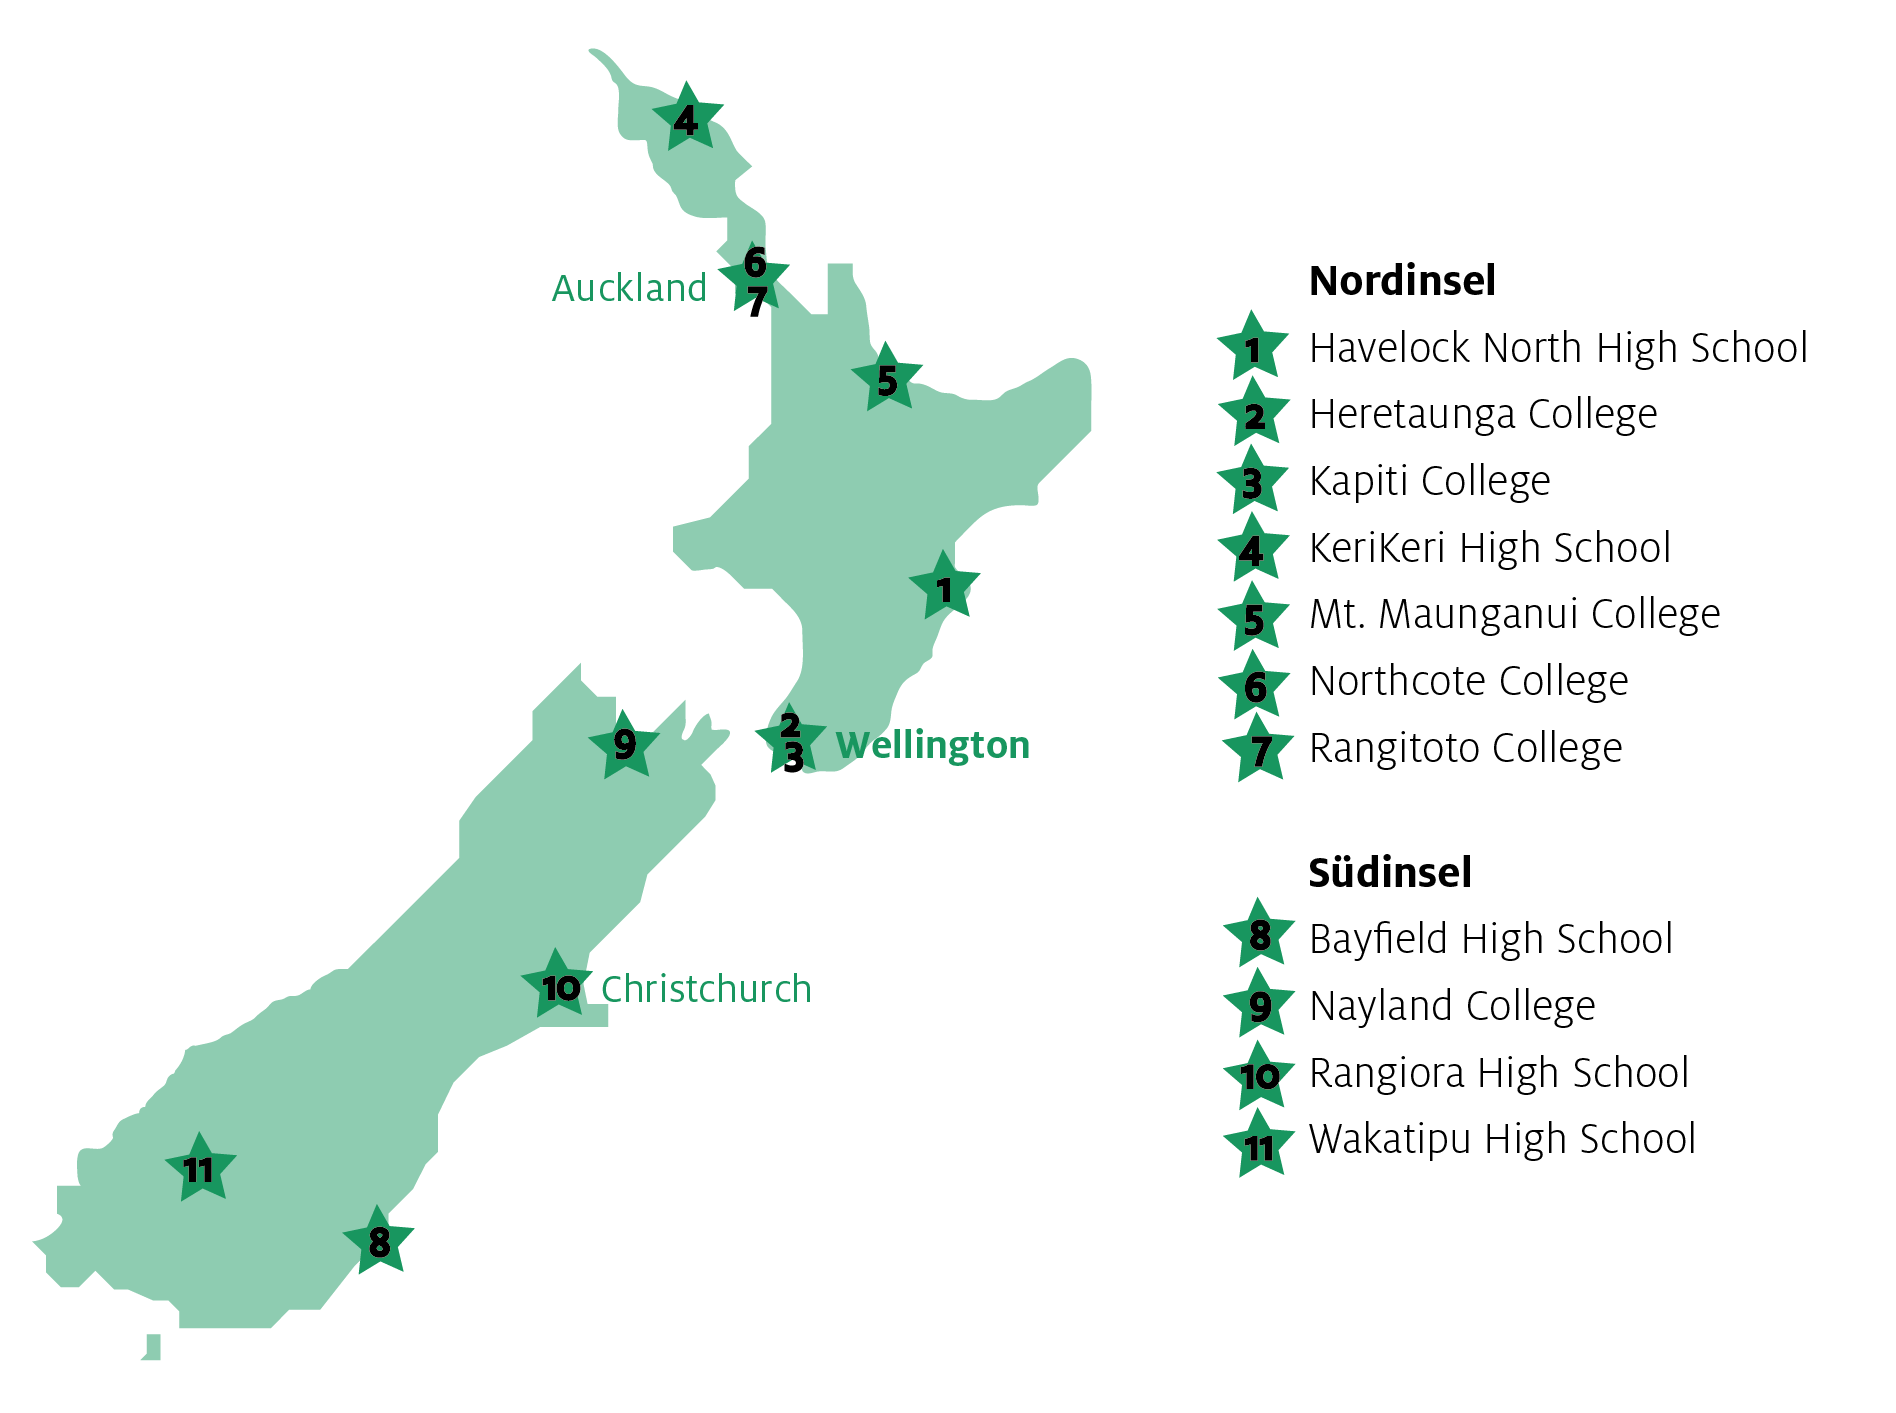 Schulen und Regionen für Schüleraustausch in Neuseeland